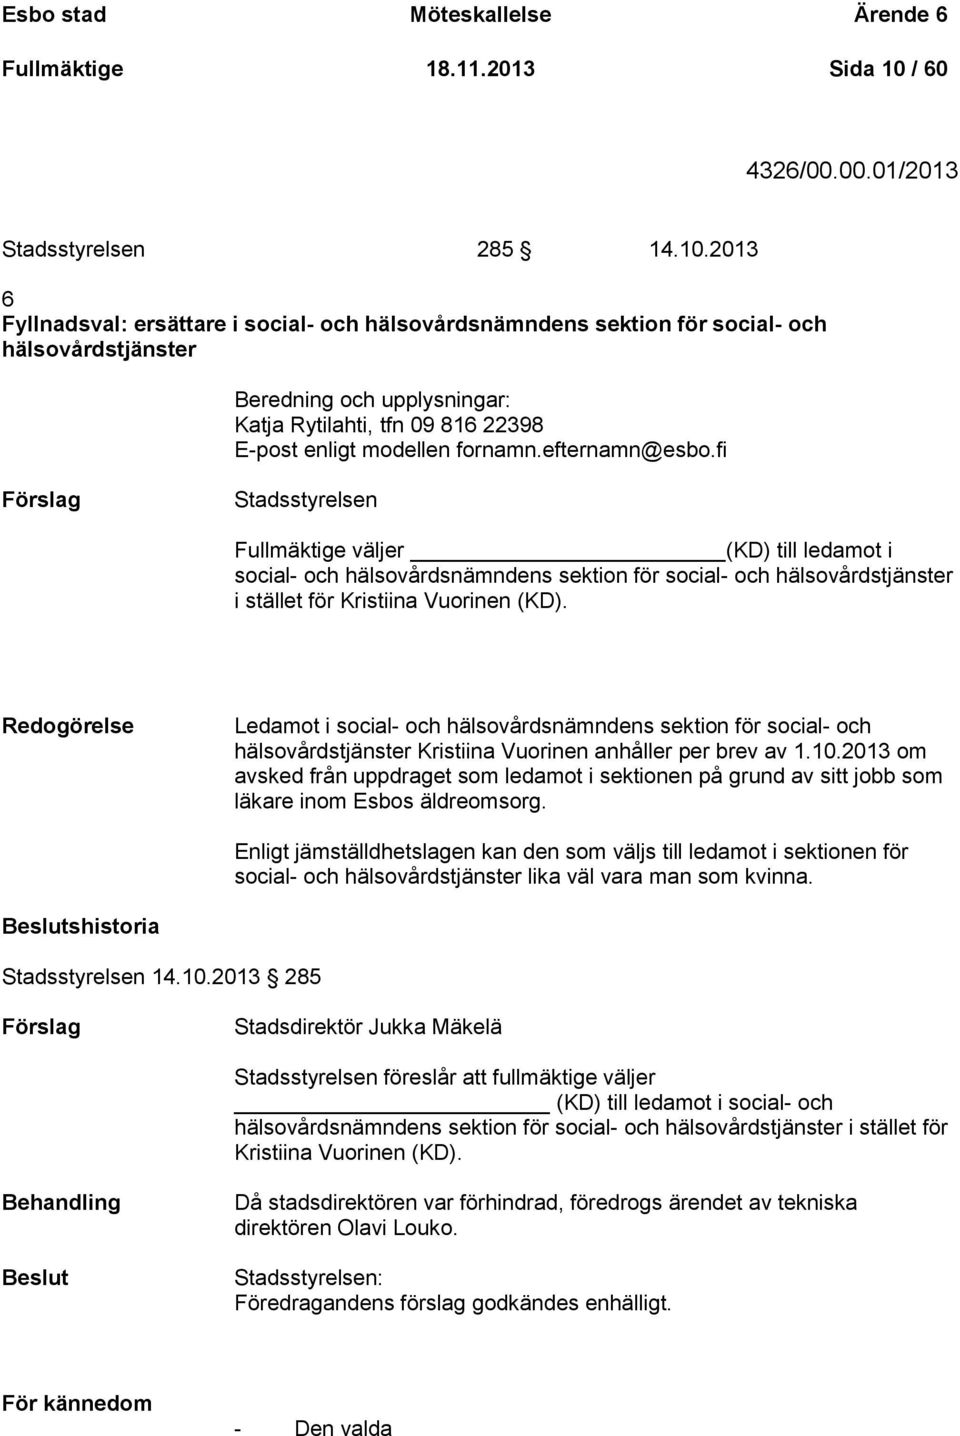 2013 6 Fyllnadsval: ersättare i social- och hälsovårdsnämndens sektion för social- och hälsovårdstjänster Beredning och upplysningar: Katja Rytilahti, tfn 09 816 22398 E-post enligt modellen fornamn.